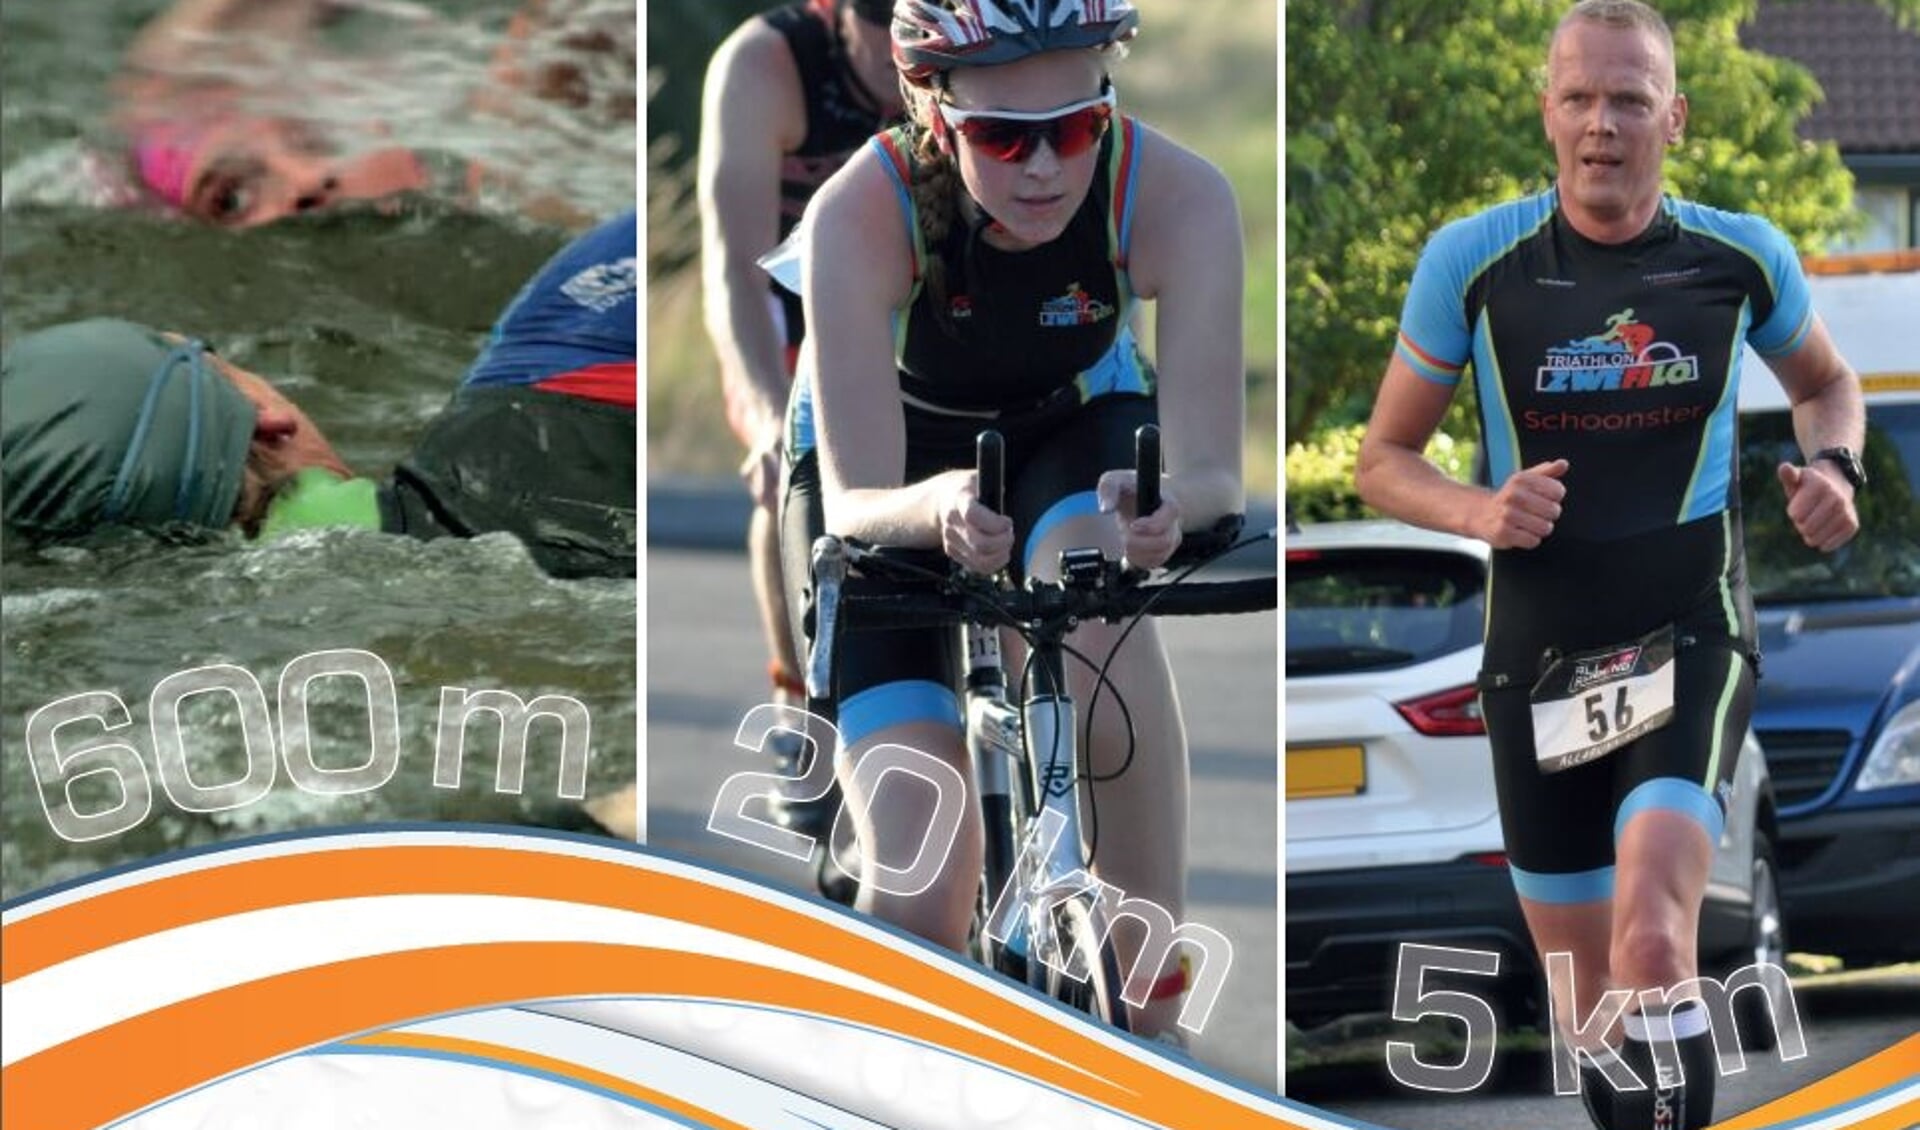 Zwemmen, fietsen en lopen: op 19 juni staat de achtste editie van de Van der Voort Groep Triathlon Langedijk op de kalender. 